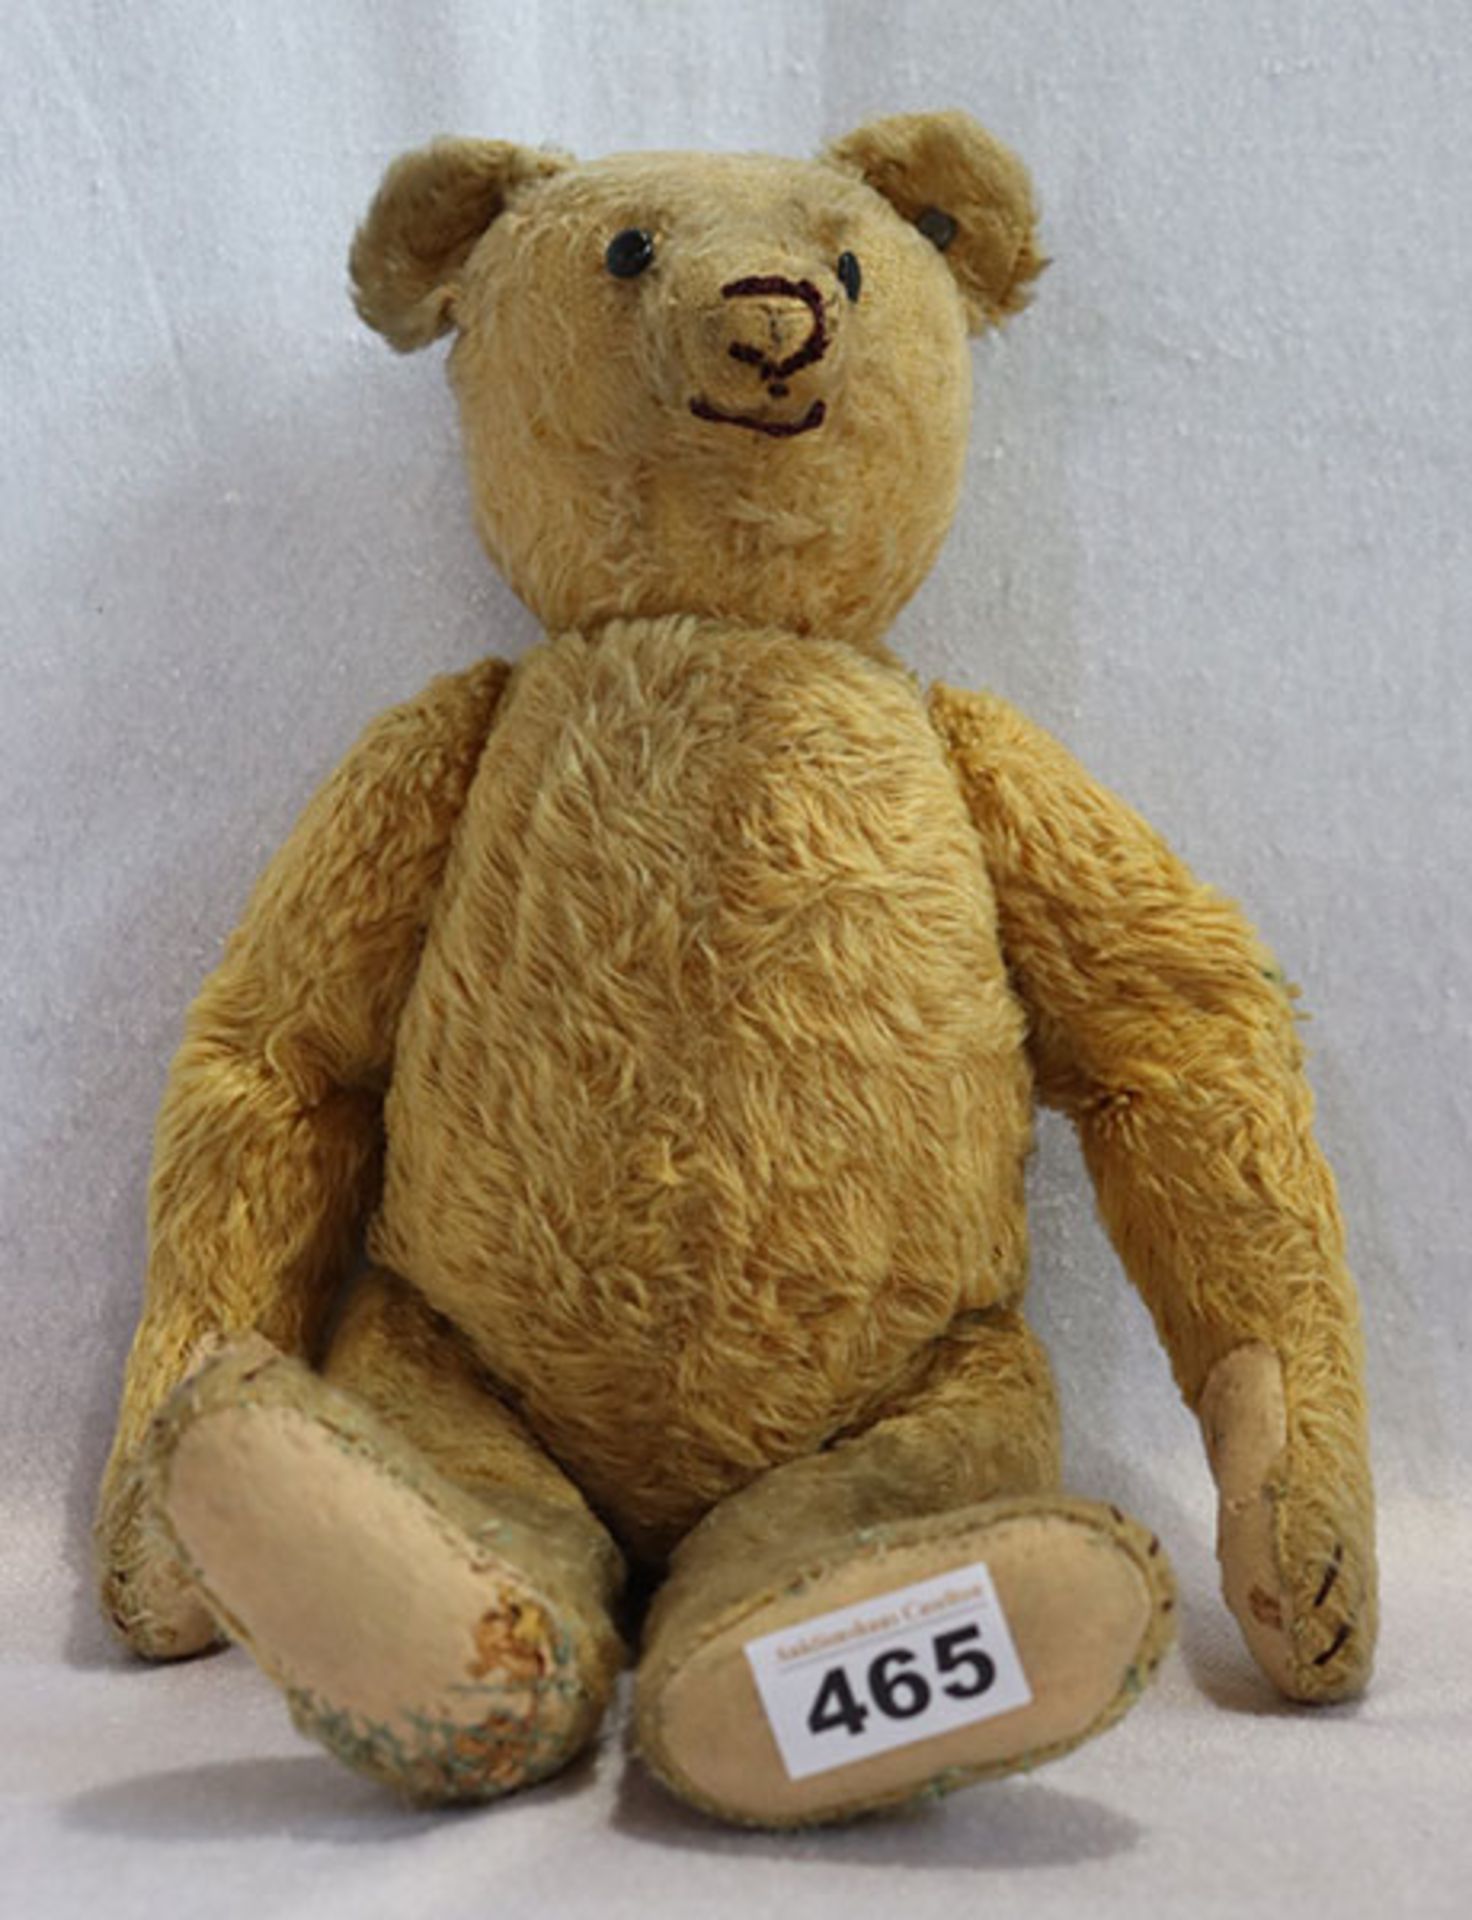 Steiff Teddybär mit Knopf im Ohr, um 1920 ?, bespielt, beschädigt, H 39 cm